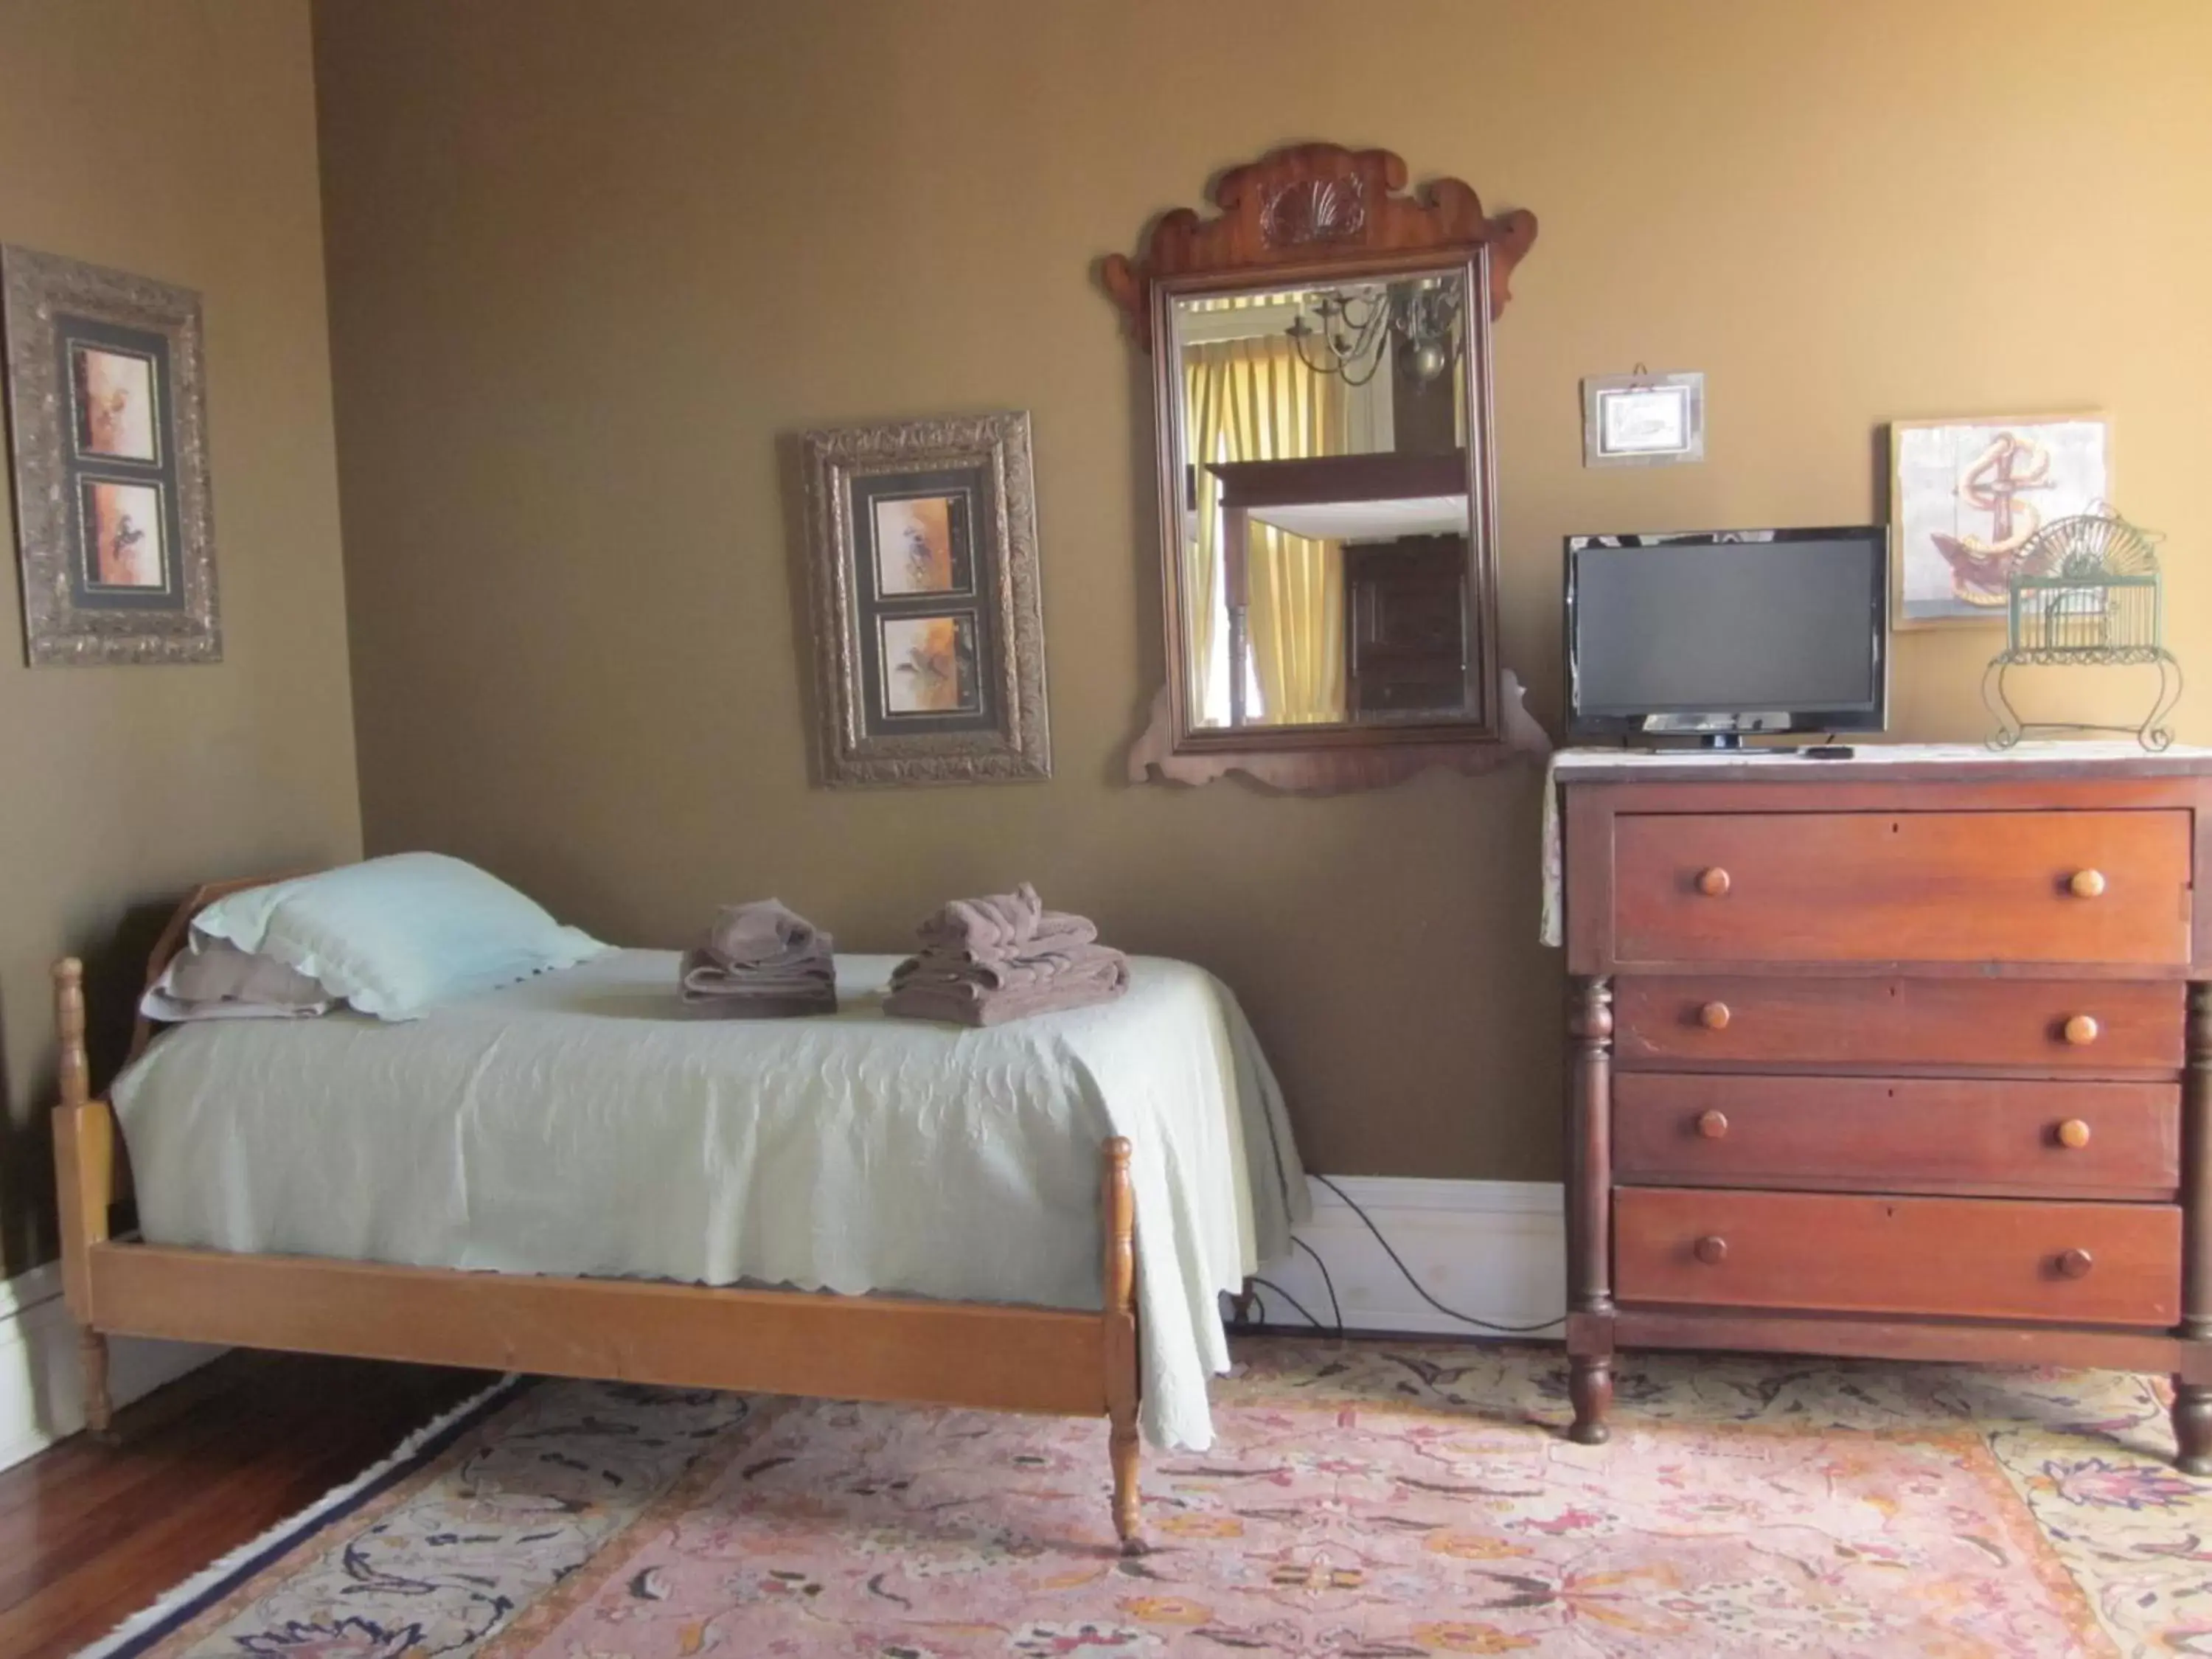 Bed, Room Photo in Baer House Inn